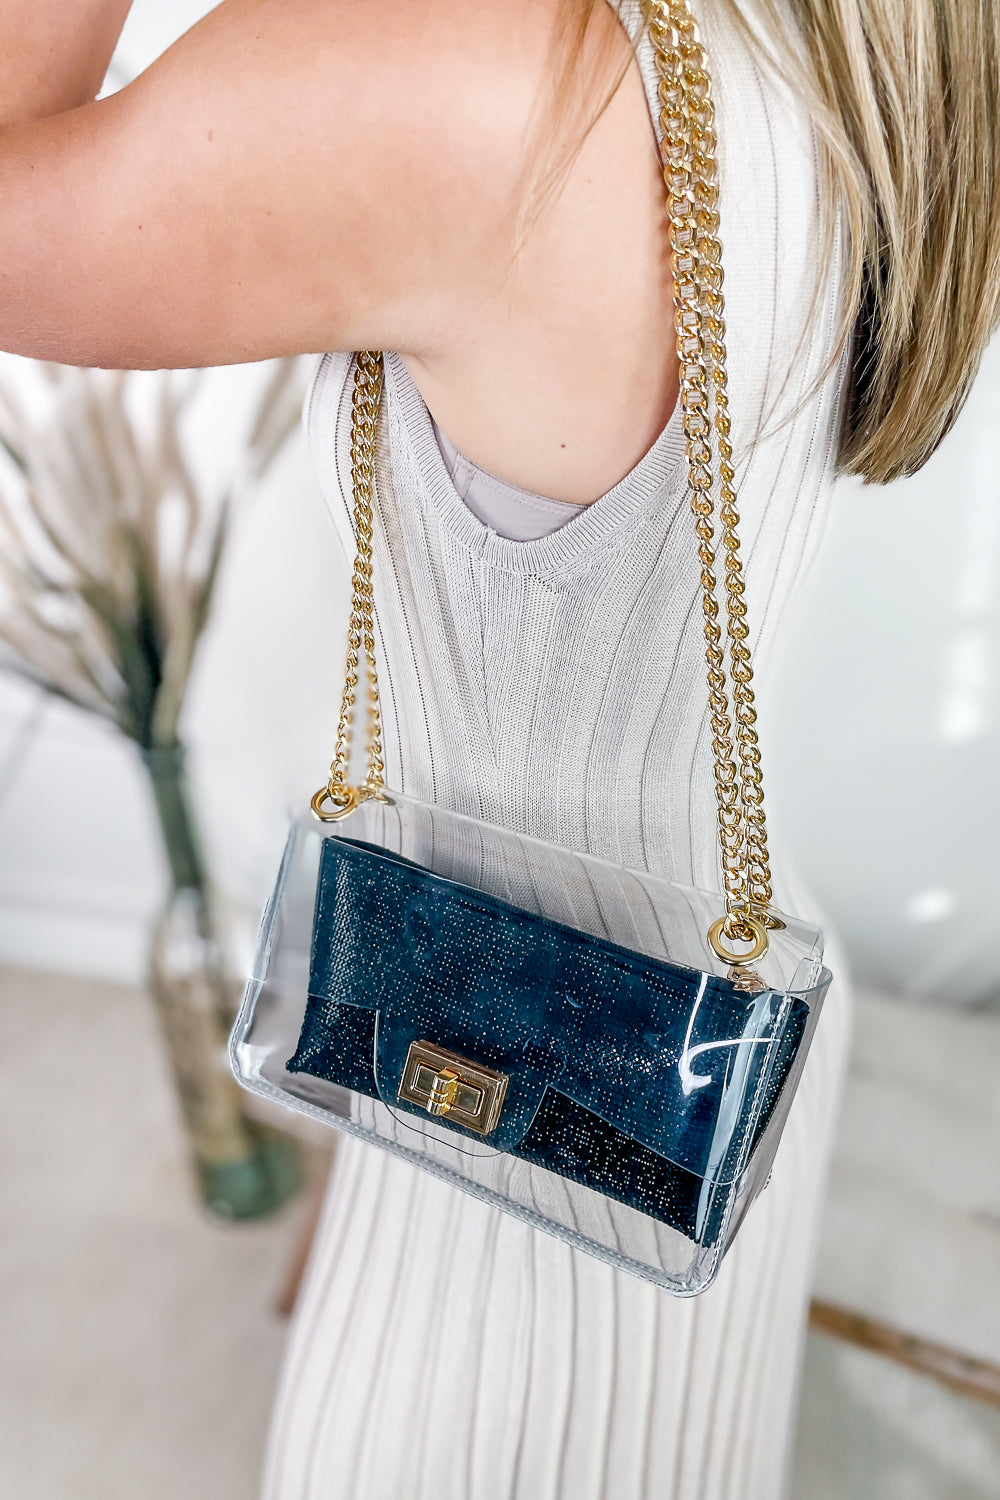 A Classy Look Clear Bag With Rhinestone Clutch - Black | Makk Fashions